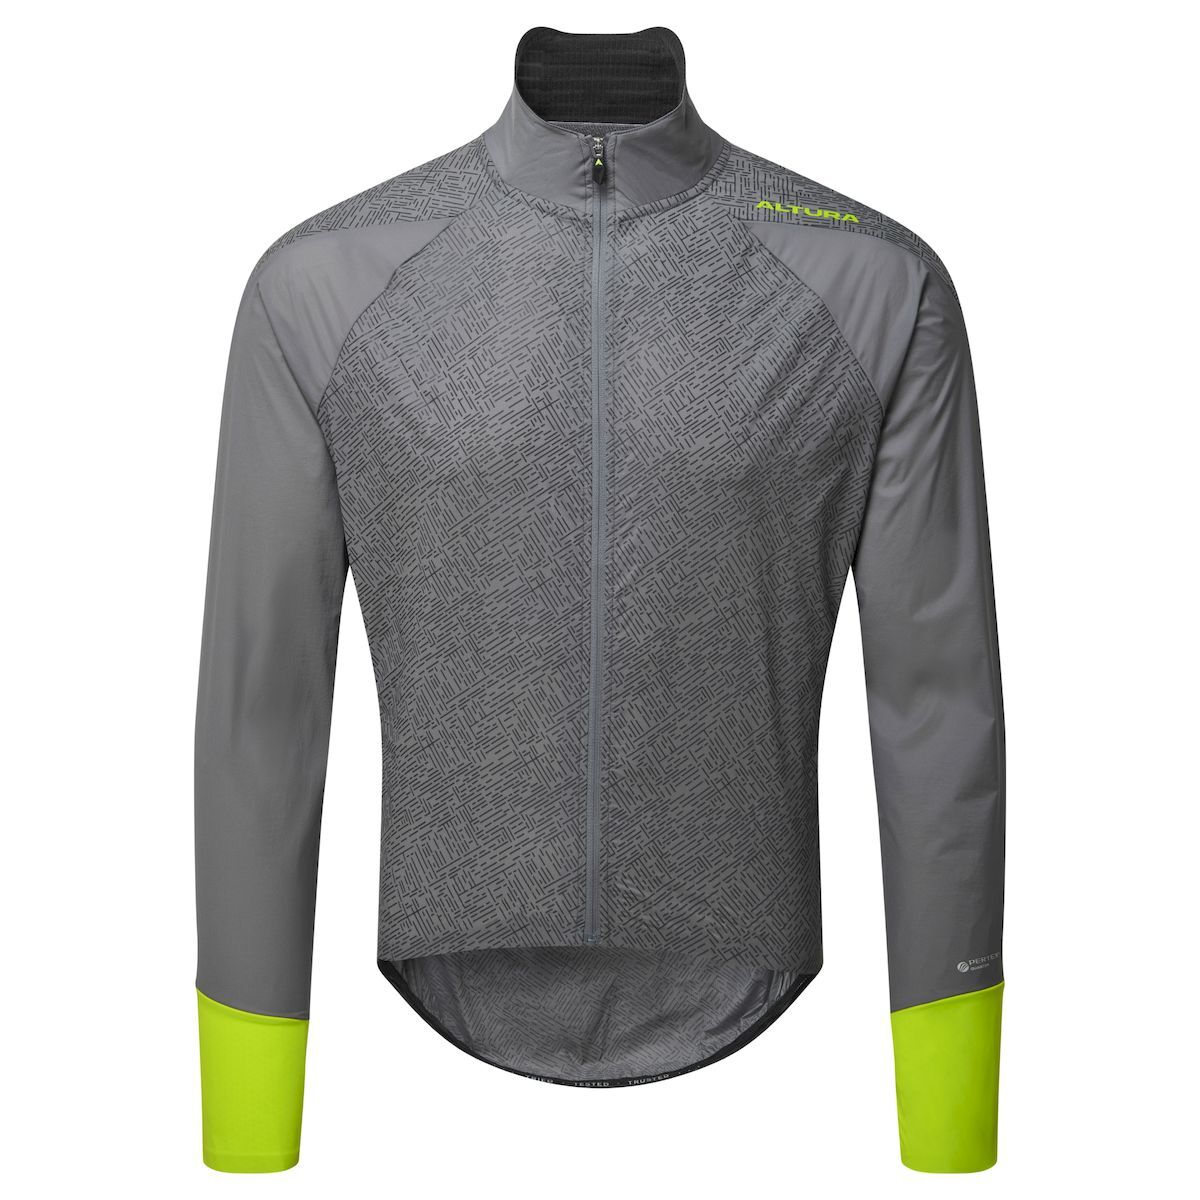 Altura Compressible Icon Rocket - Cycling jacket - Men's